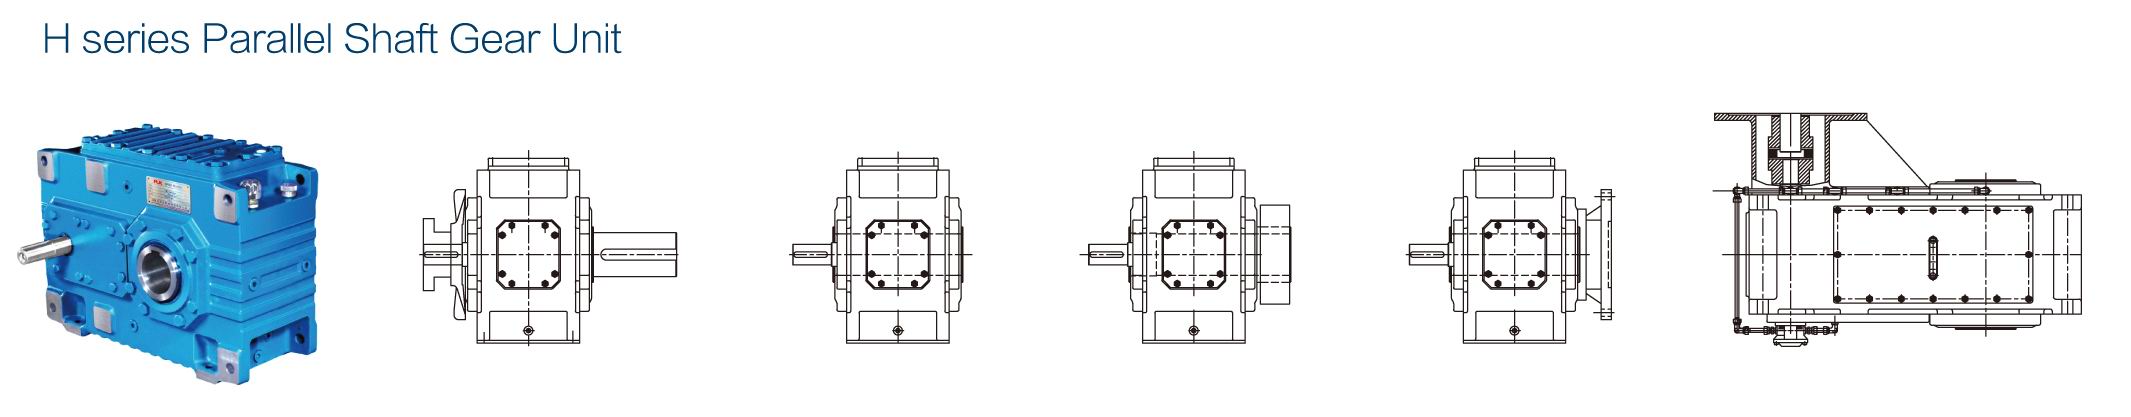 Parallel shaft gear unit modular design